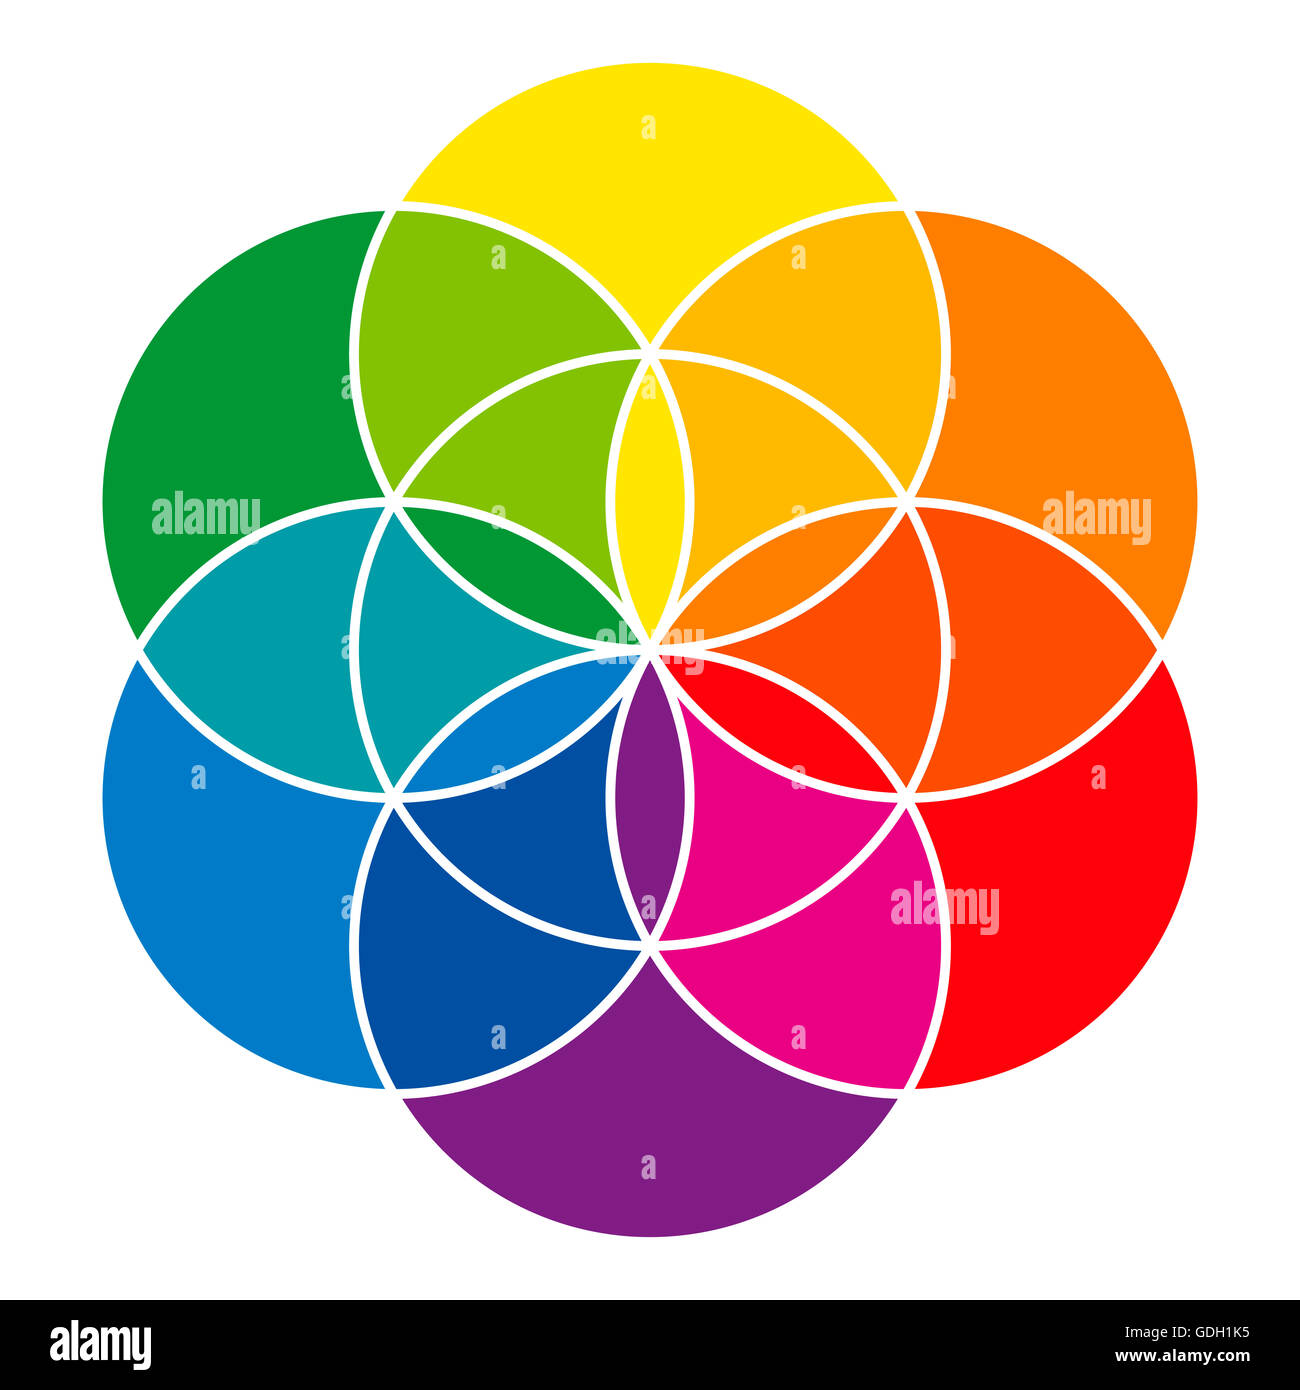 Semillas de color arcoiris de la vida y de la rueda de color, que muestra los colores complementarios que se utiliza en el arte y pinturas. Foto de stock